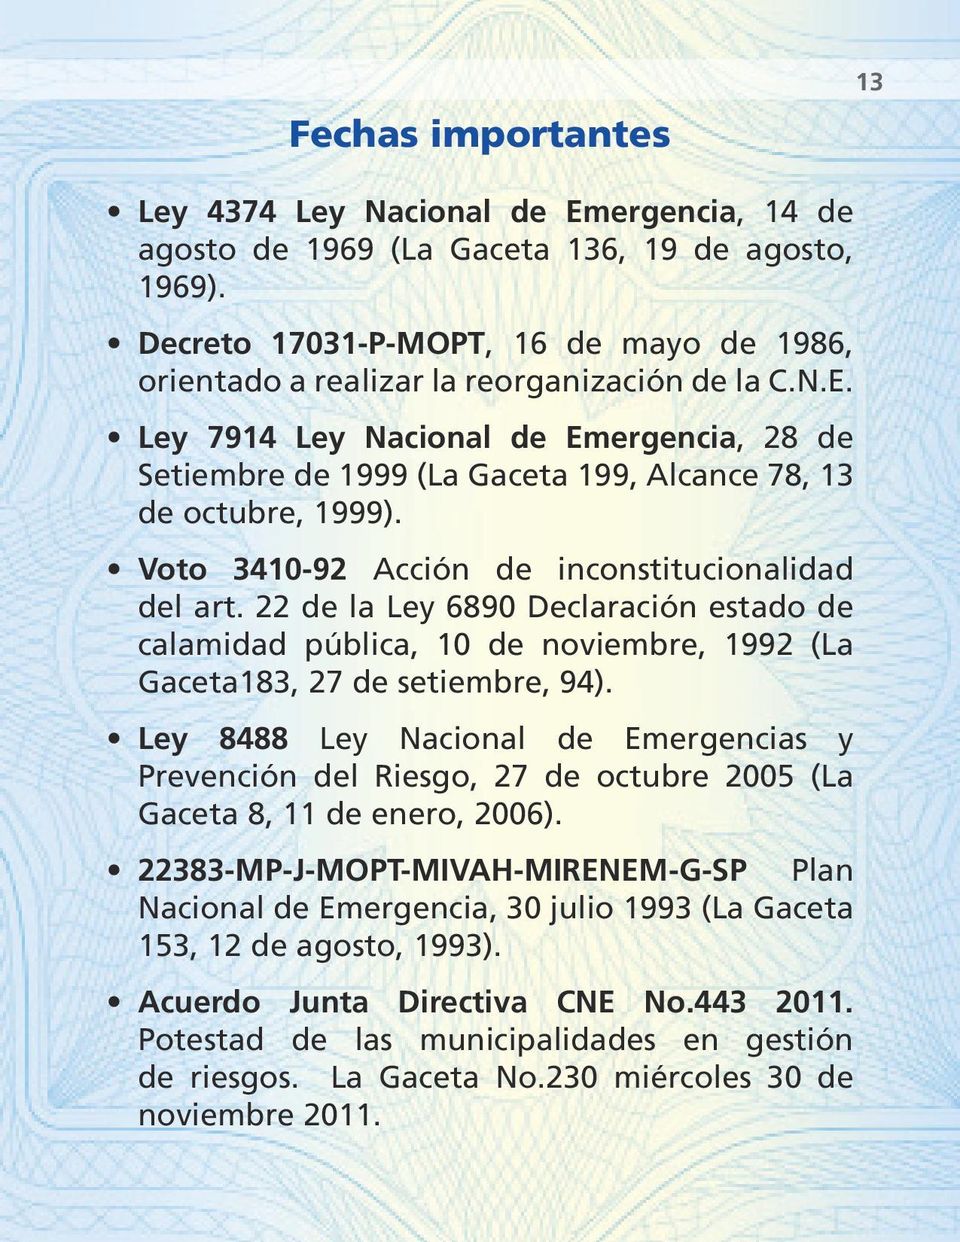 Ley 7914 Ley Nacional de Emergencia, 28 de Setiembre de 1999 (La Gaceta 199, Alcance 78, 13 de octubre, 1999). Voto 3410-92 Acción de inconstitucionalidad del art.